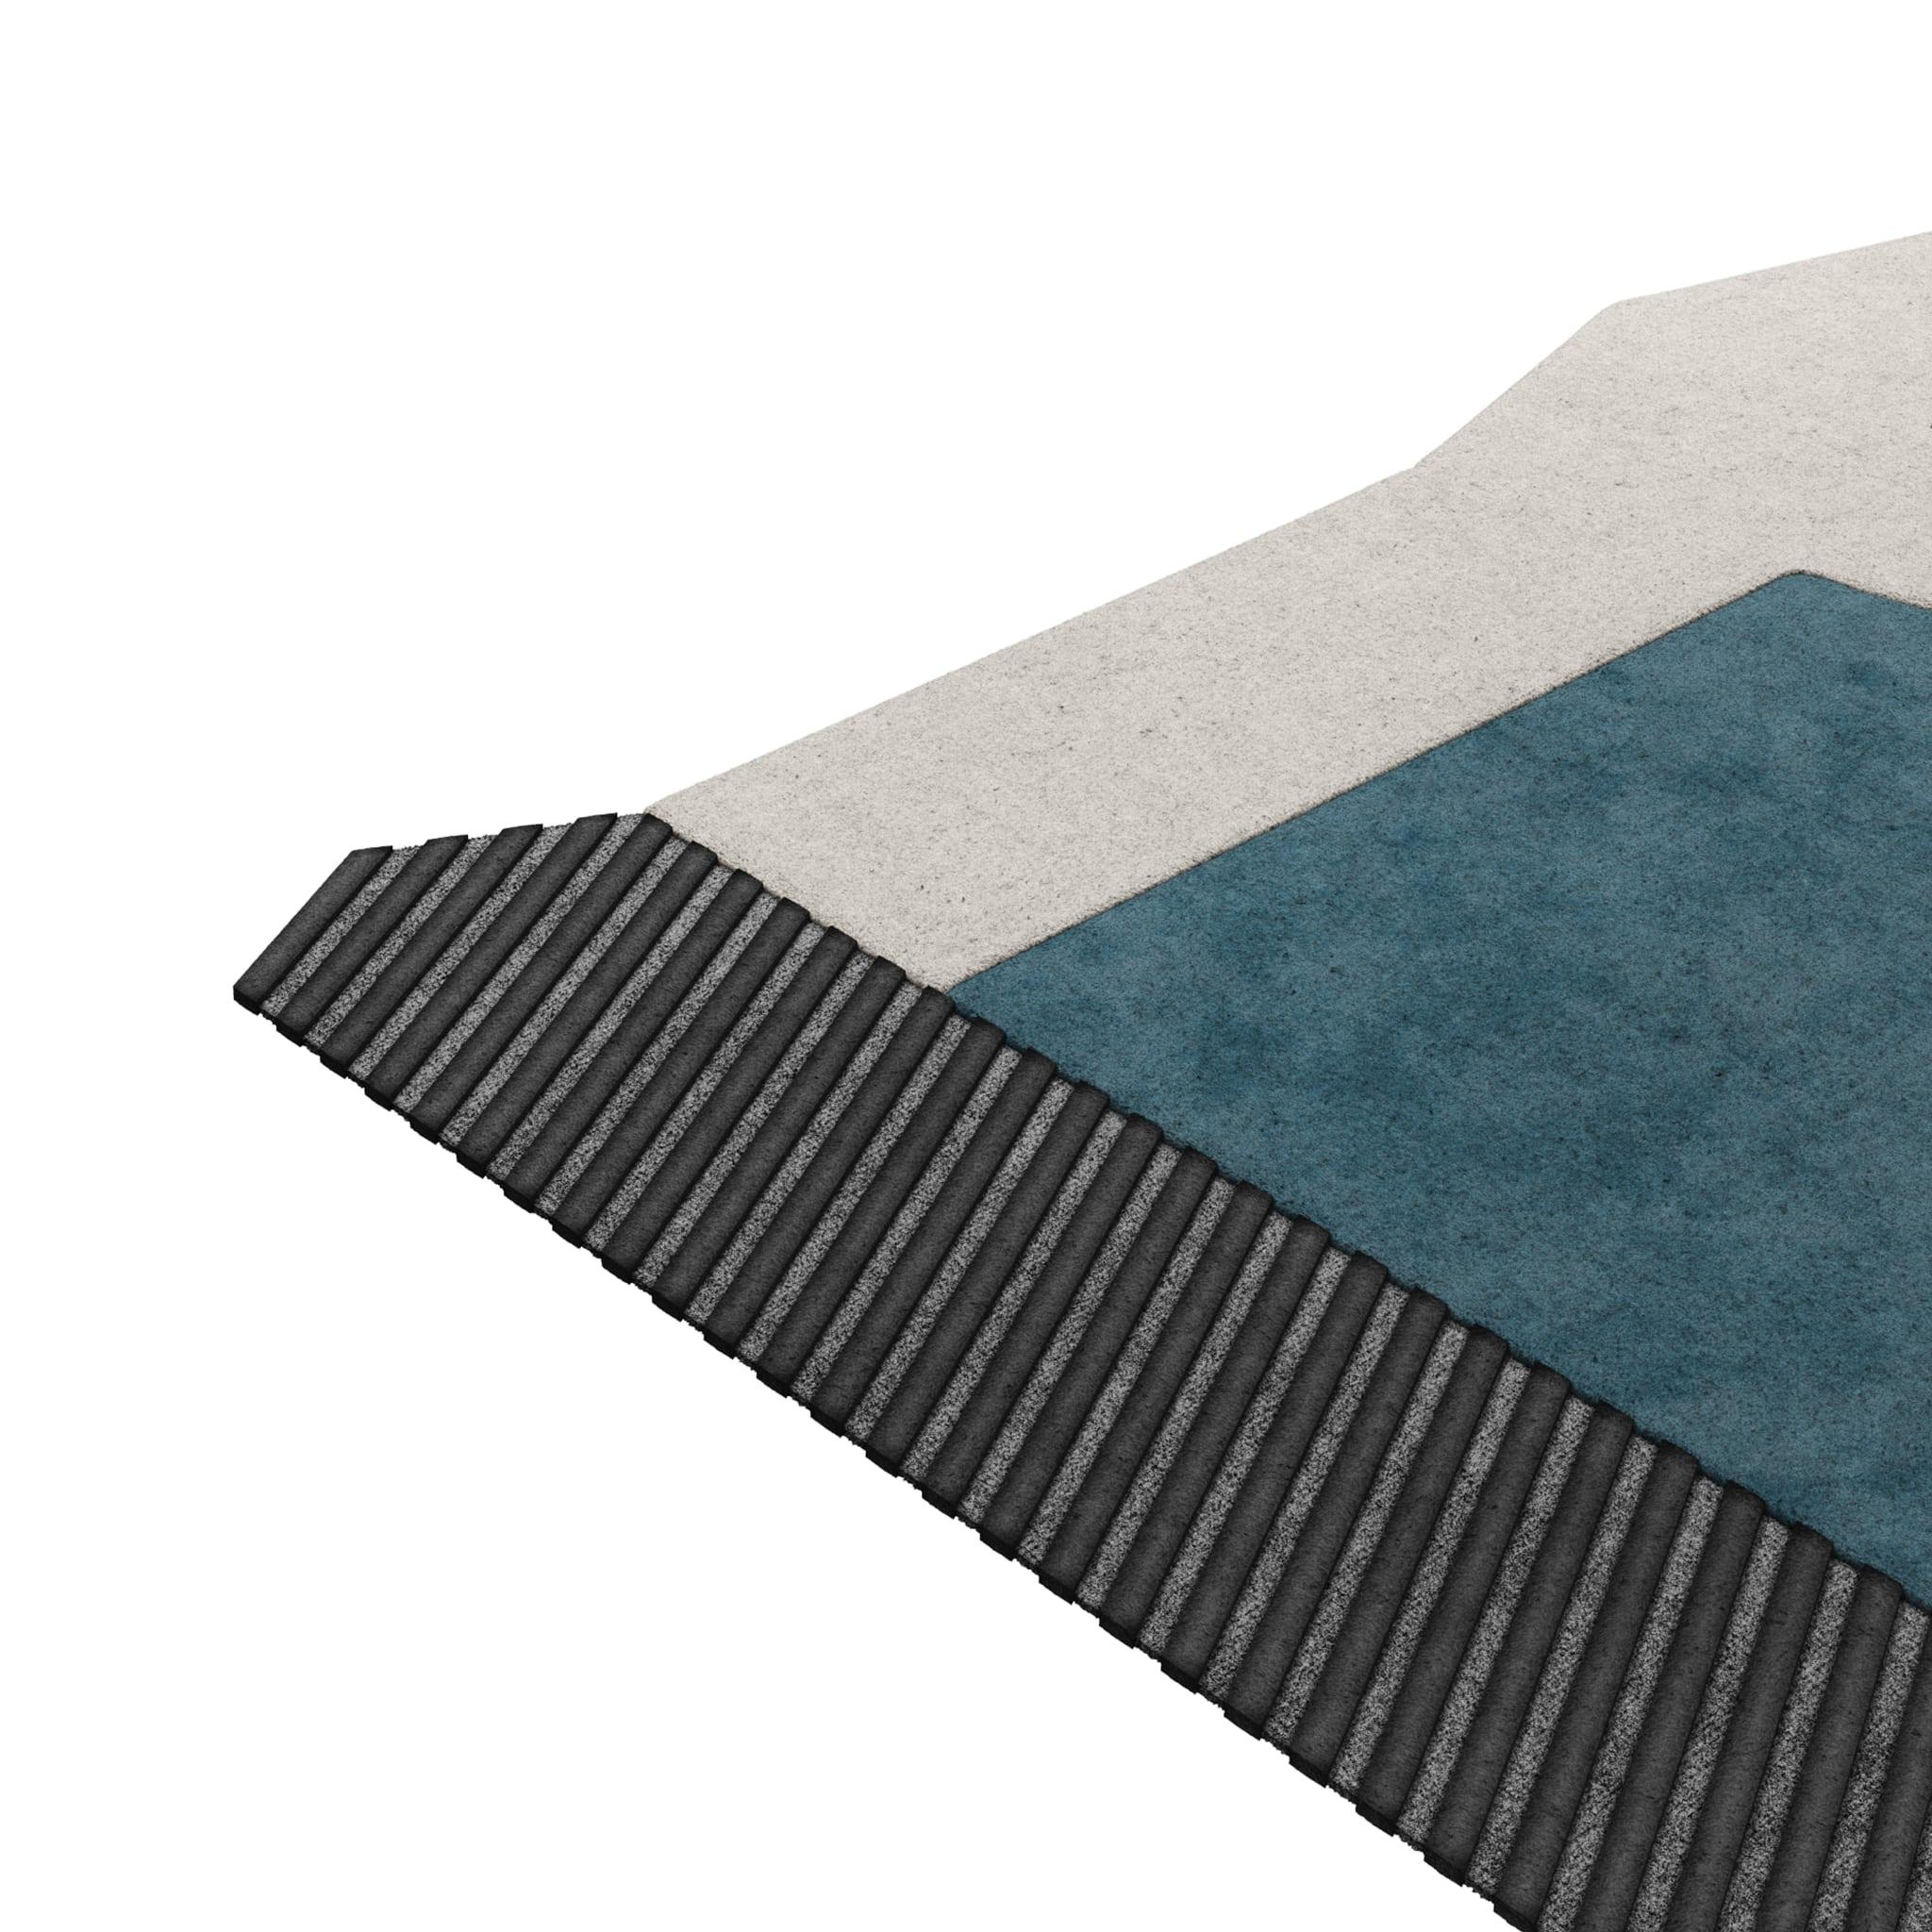 Tapis Retro #002 ist ein Retro-Teppich mit einer unregelmäßigen Form und zeitlosen Farben. Inspiriert von architektonischen Linien, setzt dieser geometrische Teppich in jedem Wohnbereich ein Zeichen. 

Der Retro-Teppich in Schwarz, Weiß und Blau mit